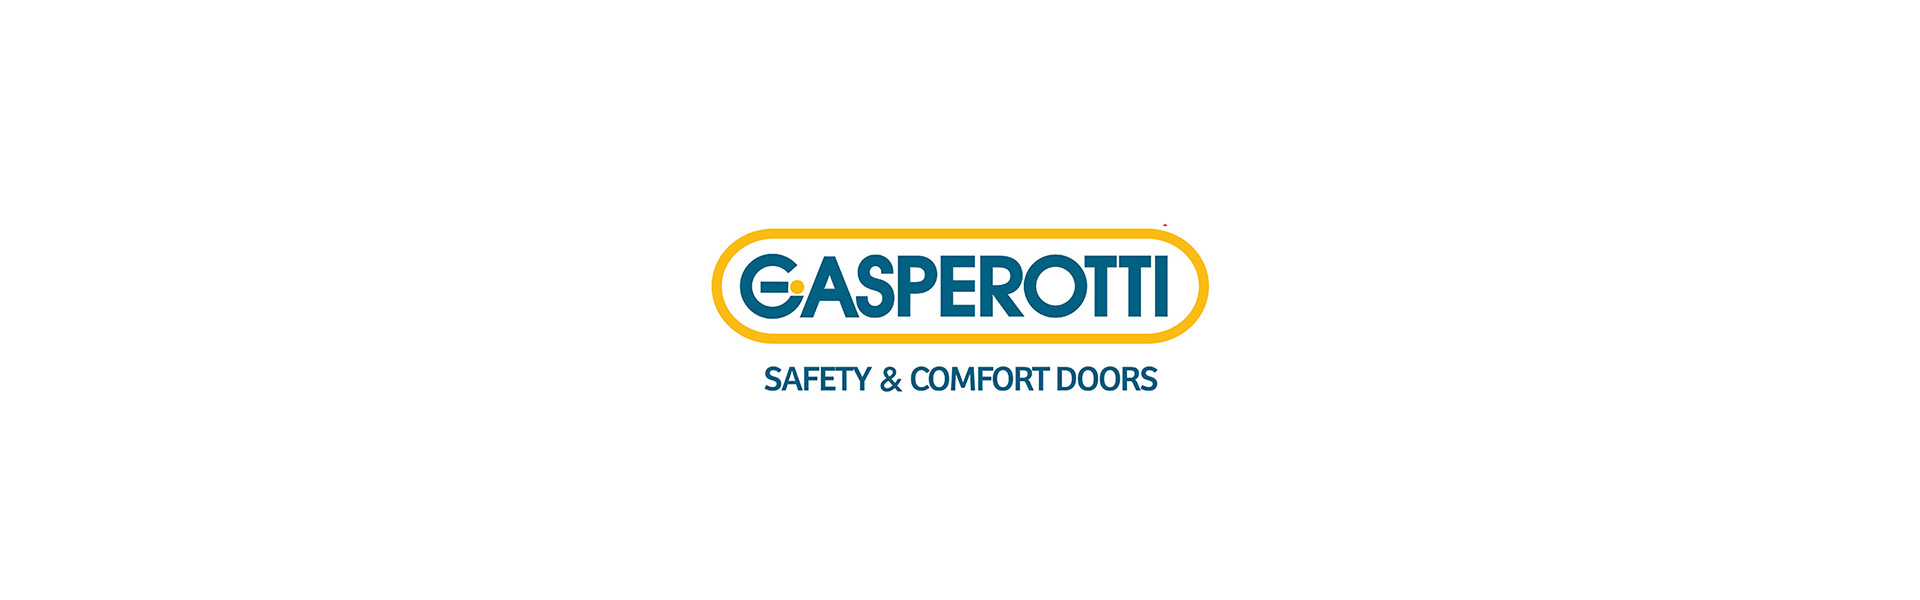 Gasperotti entrance door